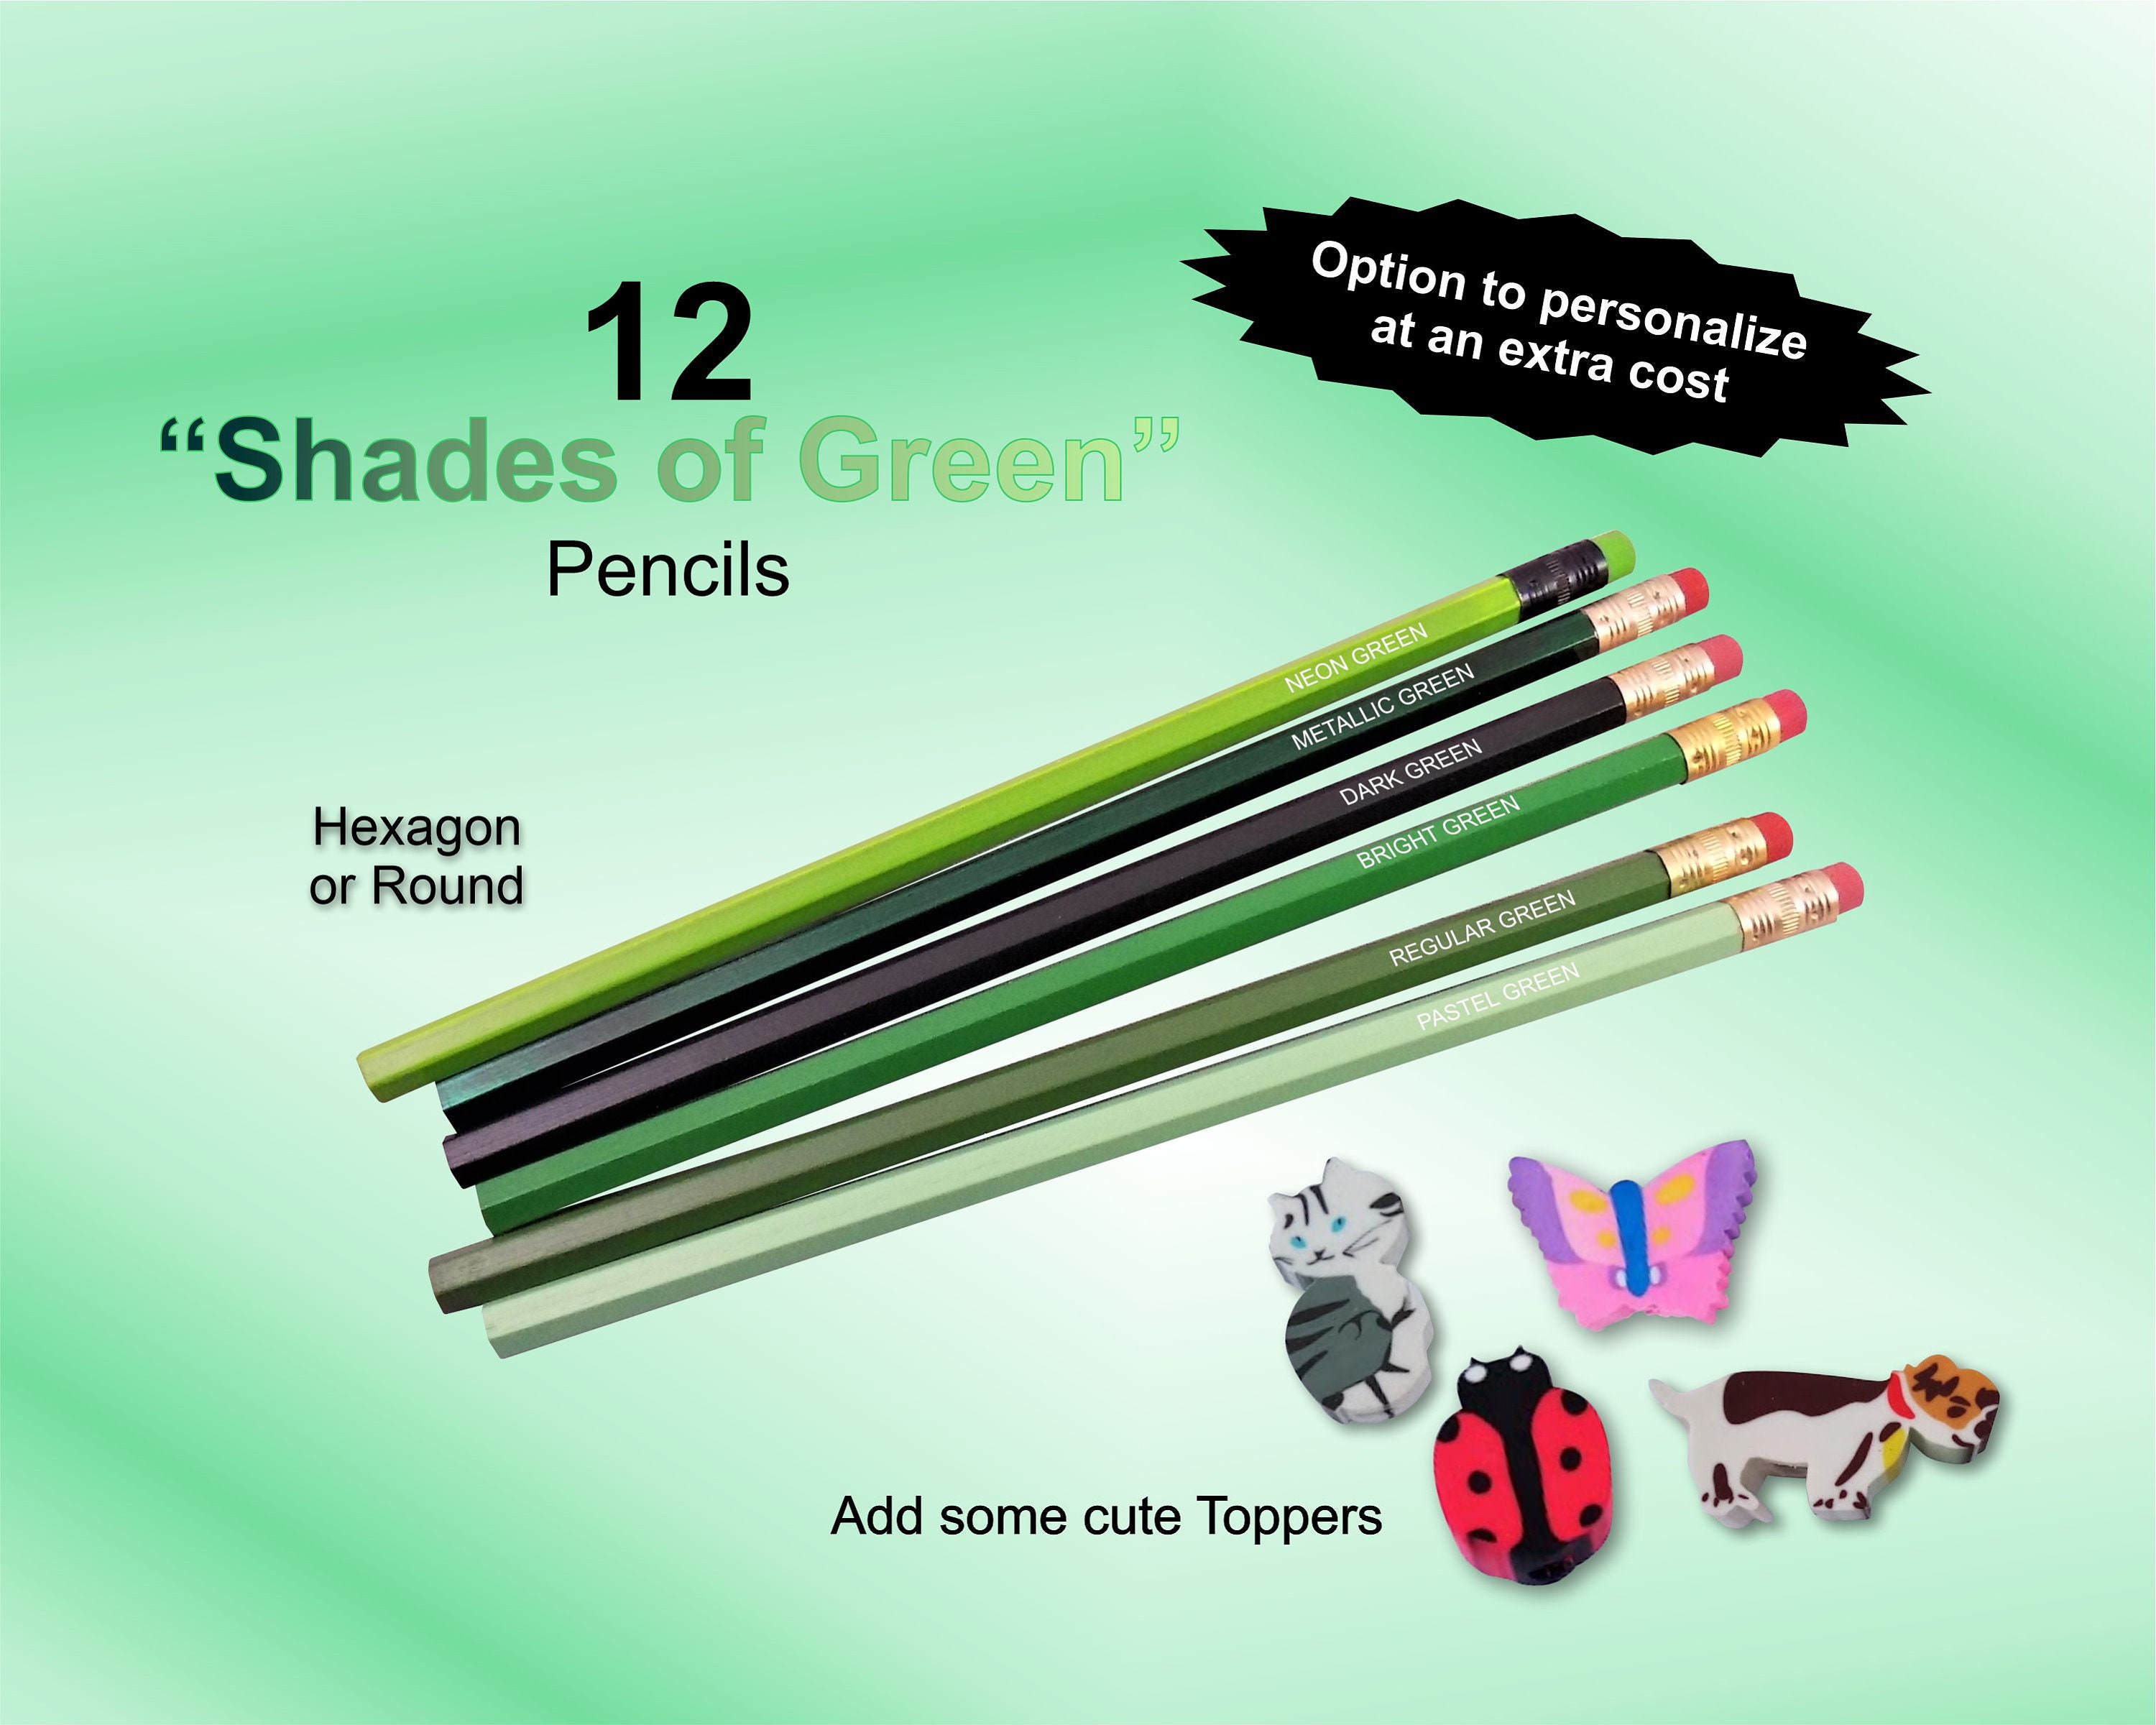 Gomme Crayons - Mini Gadget pour Calendriers de l'avent